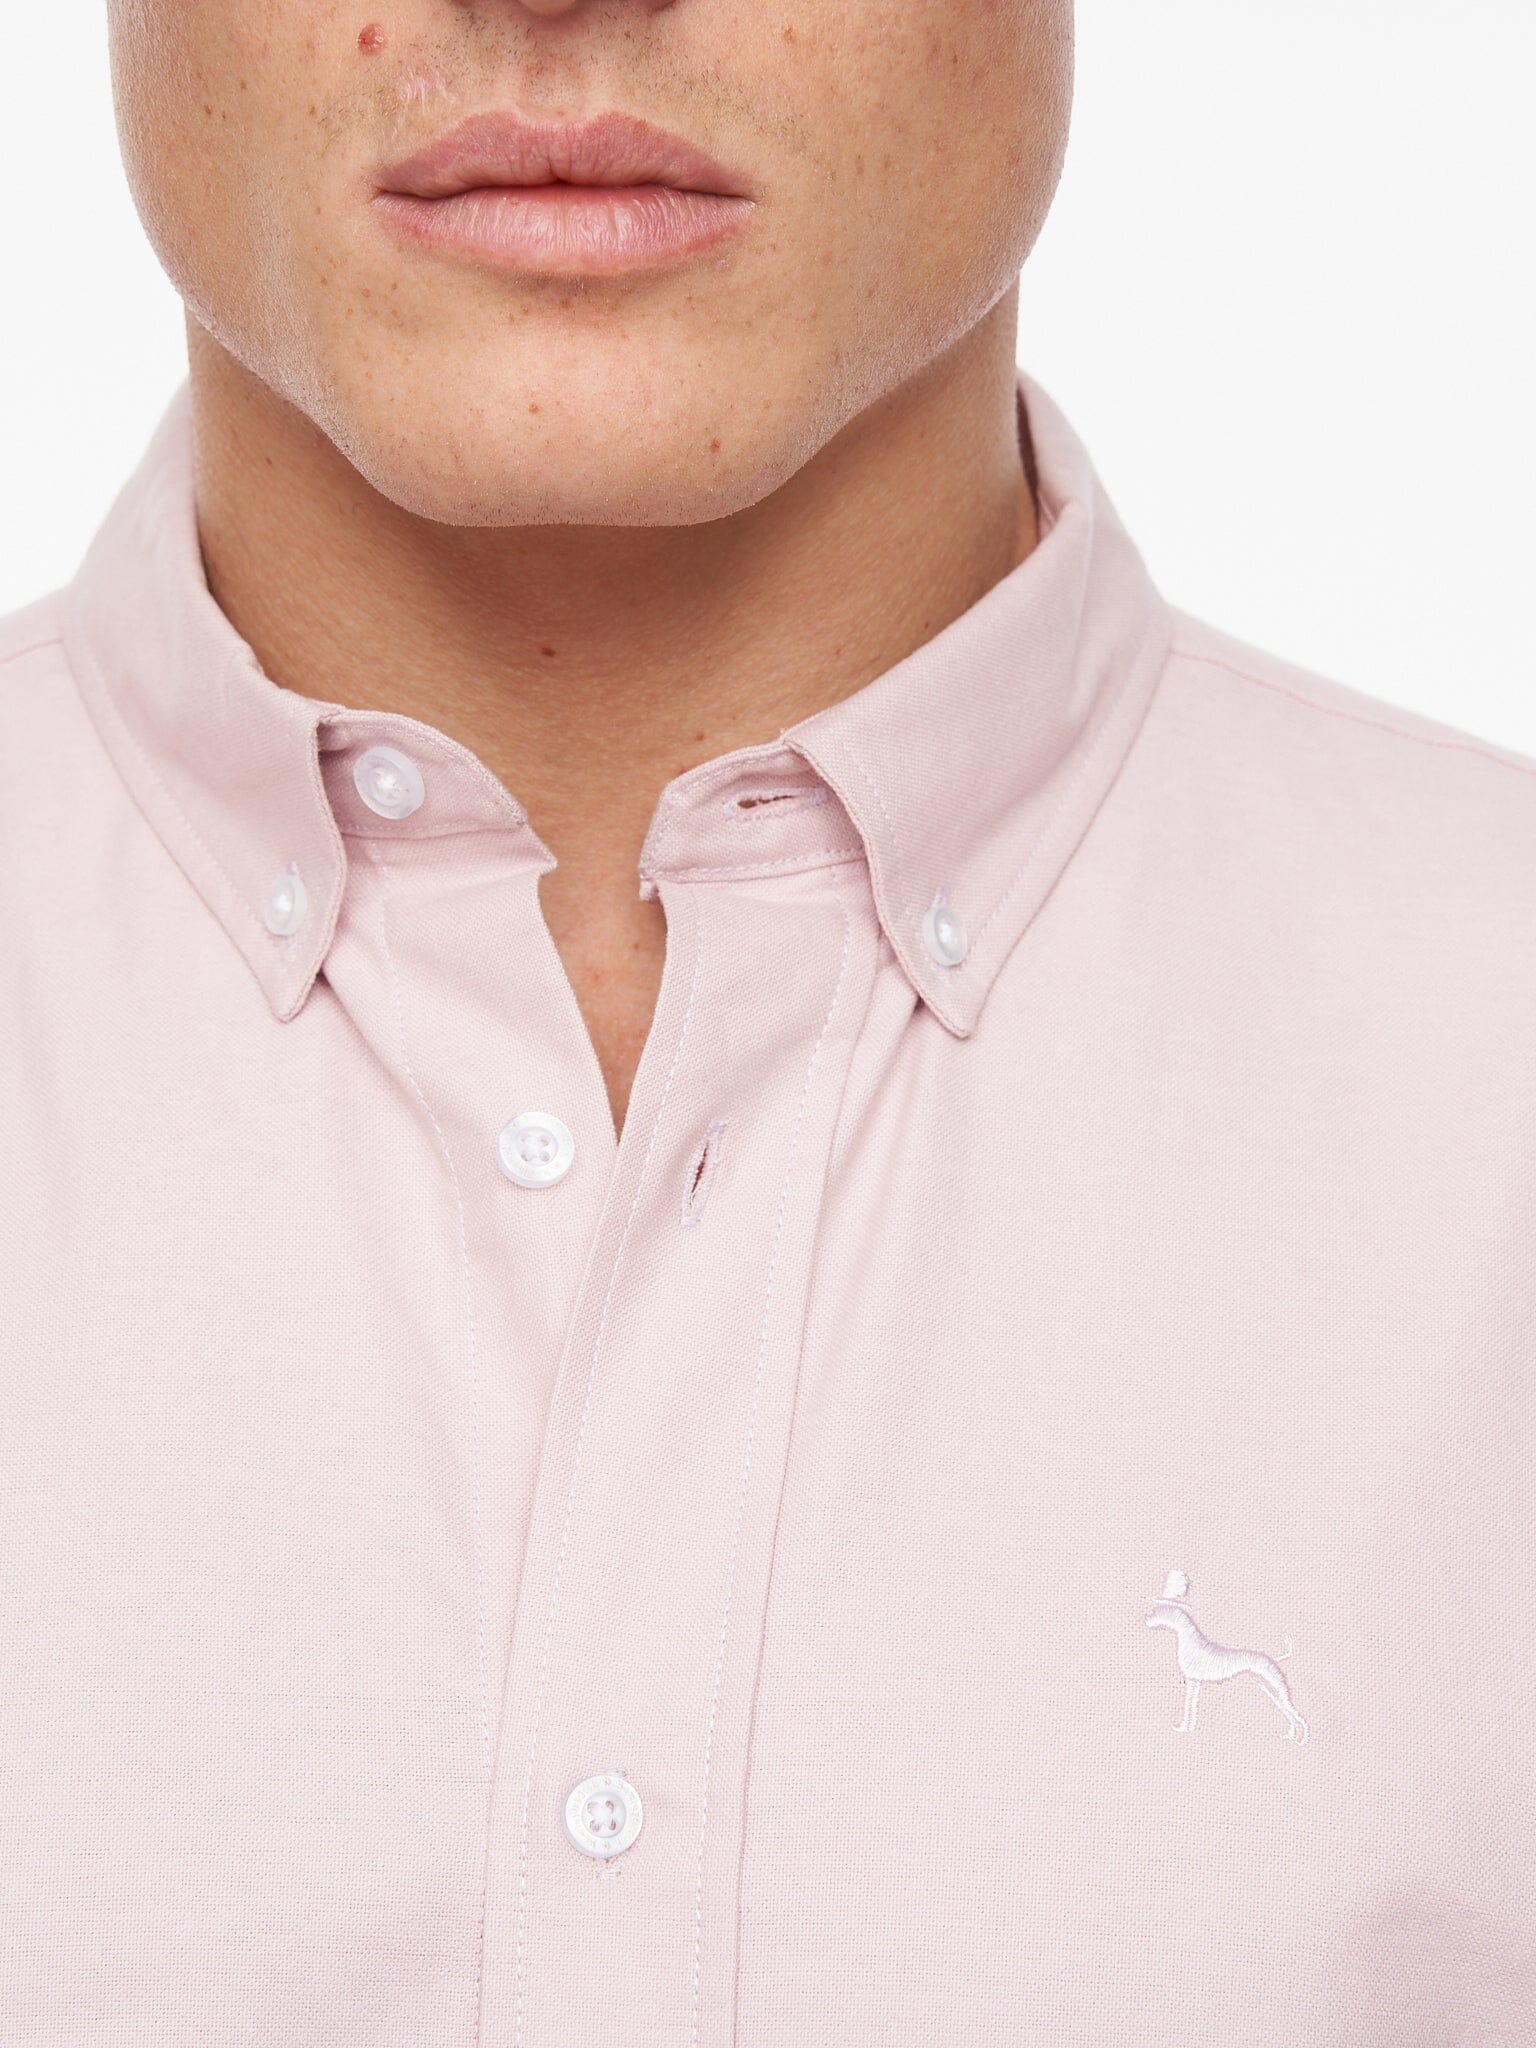 Balton Short Sleeve Oxford Shirt Light Pink